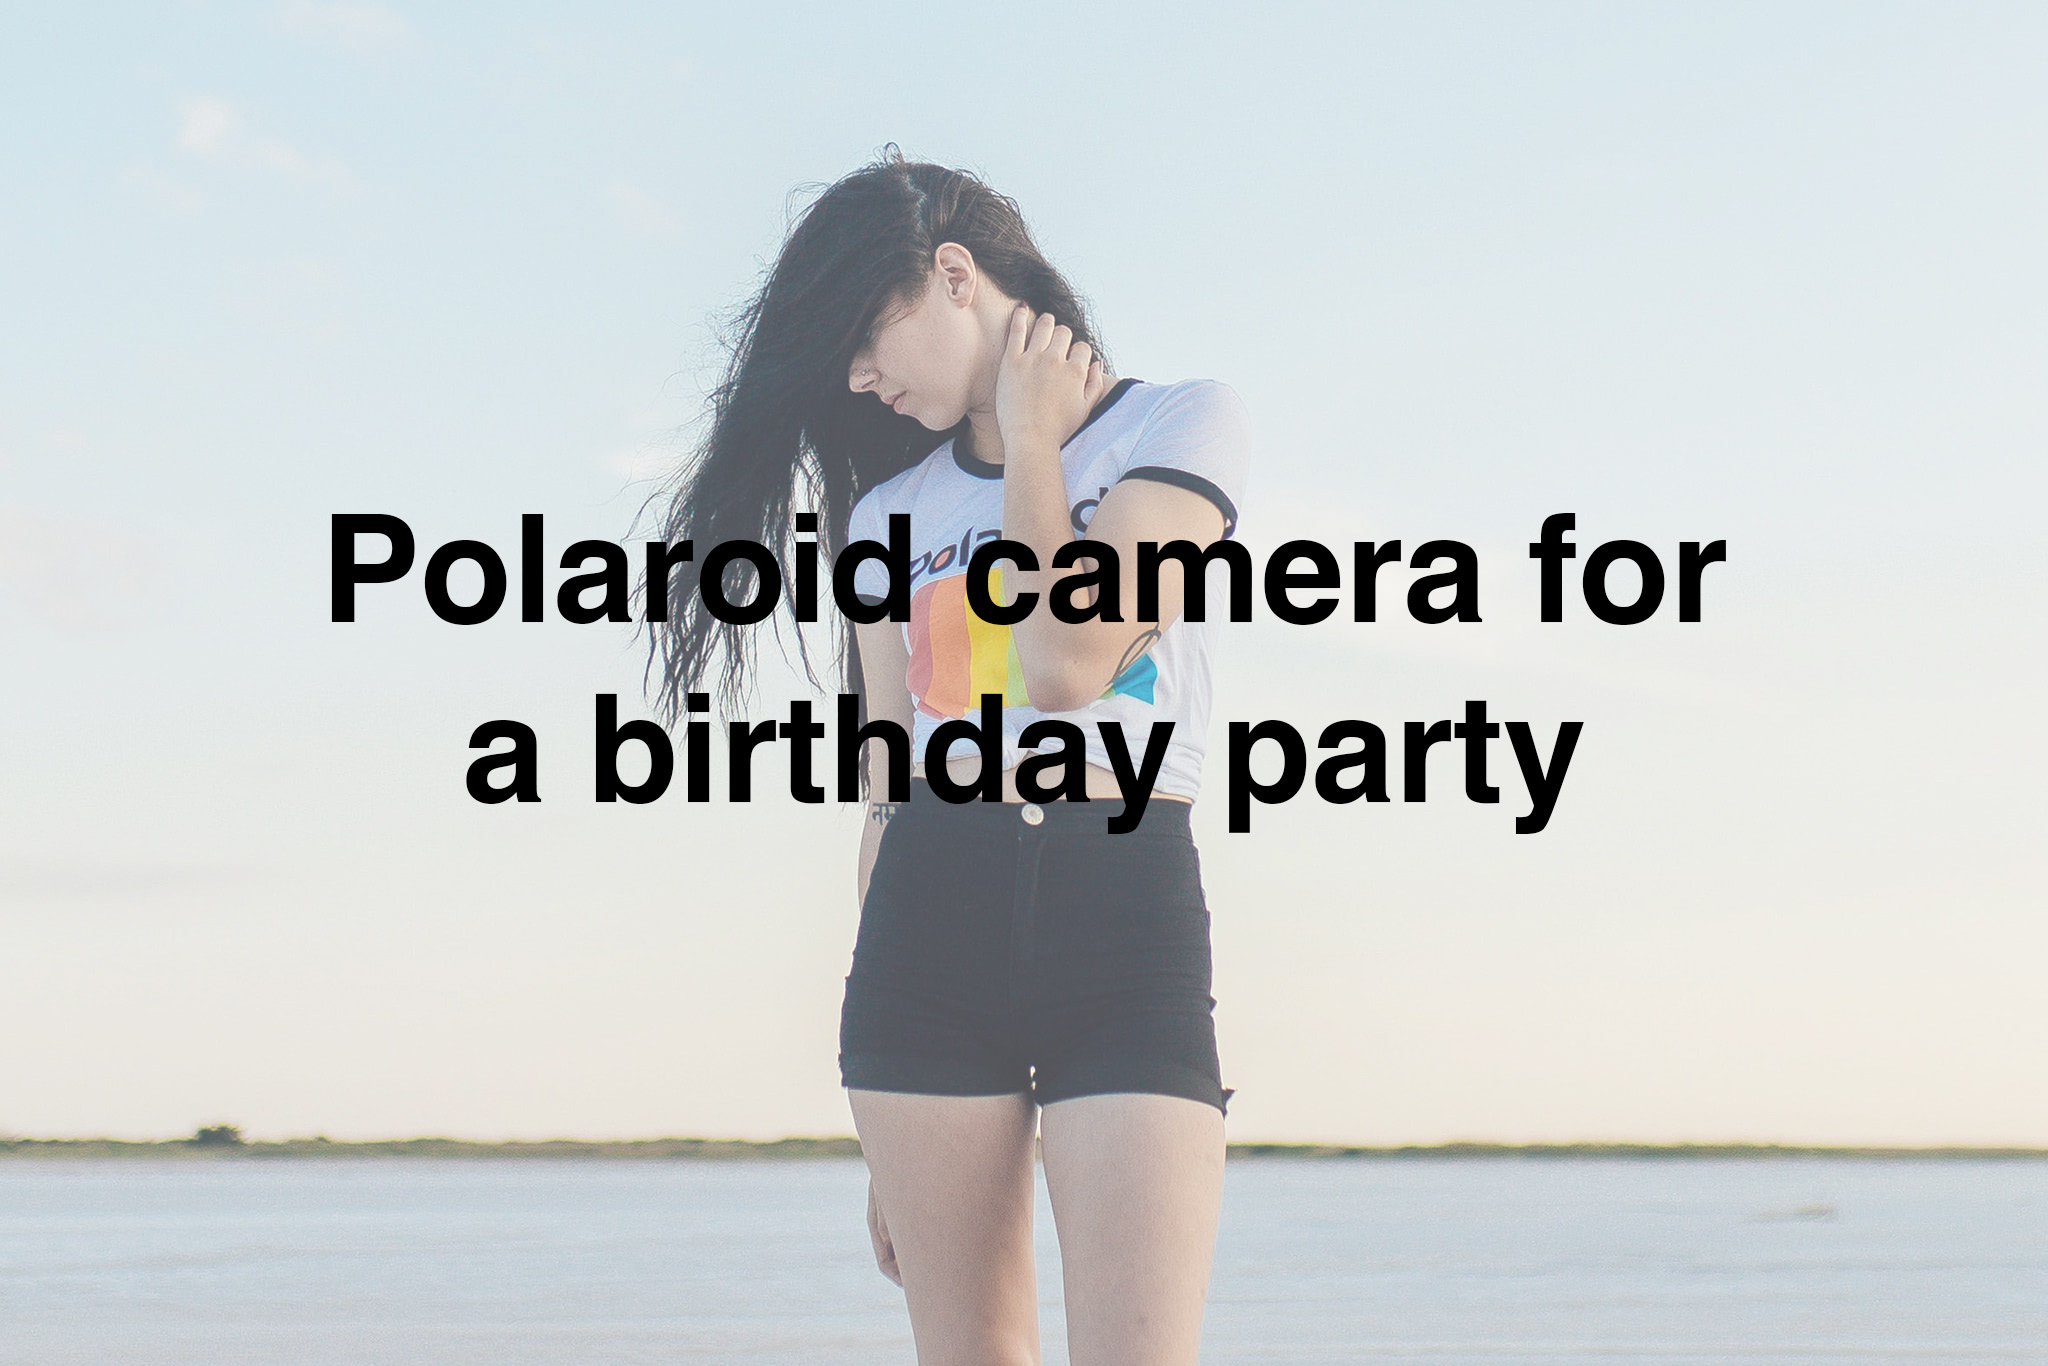 polaroid-instant-camera-birthday-party